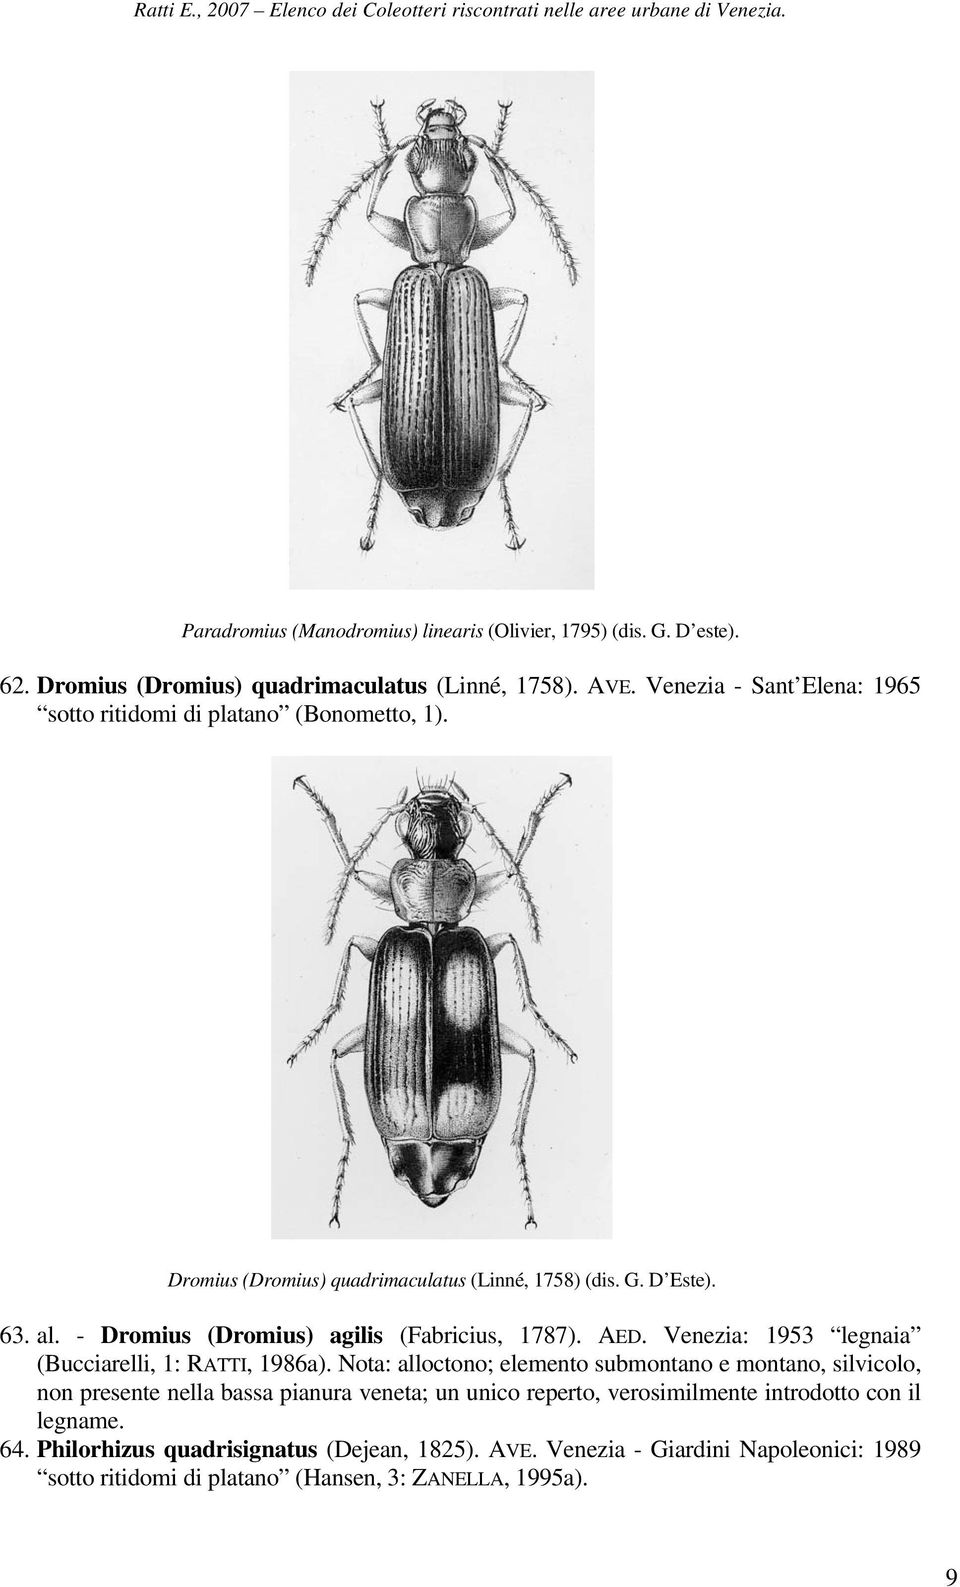 - Dromius (Dromius) agilis (Fabricius, 1787). AED. Venezia: 1953 legnaia (Bucciarelli, 1: RATTI, 1986a).